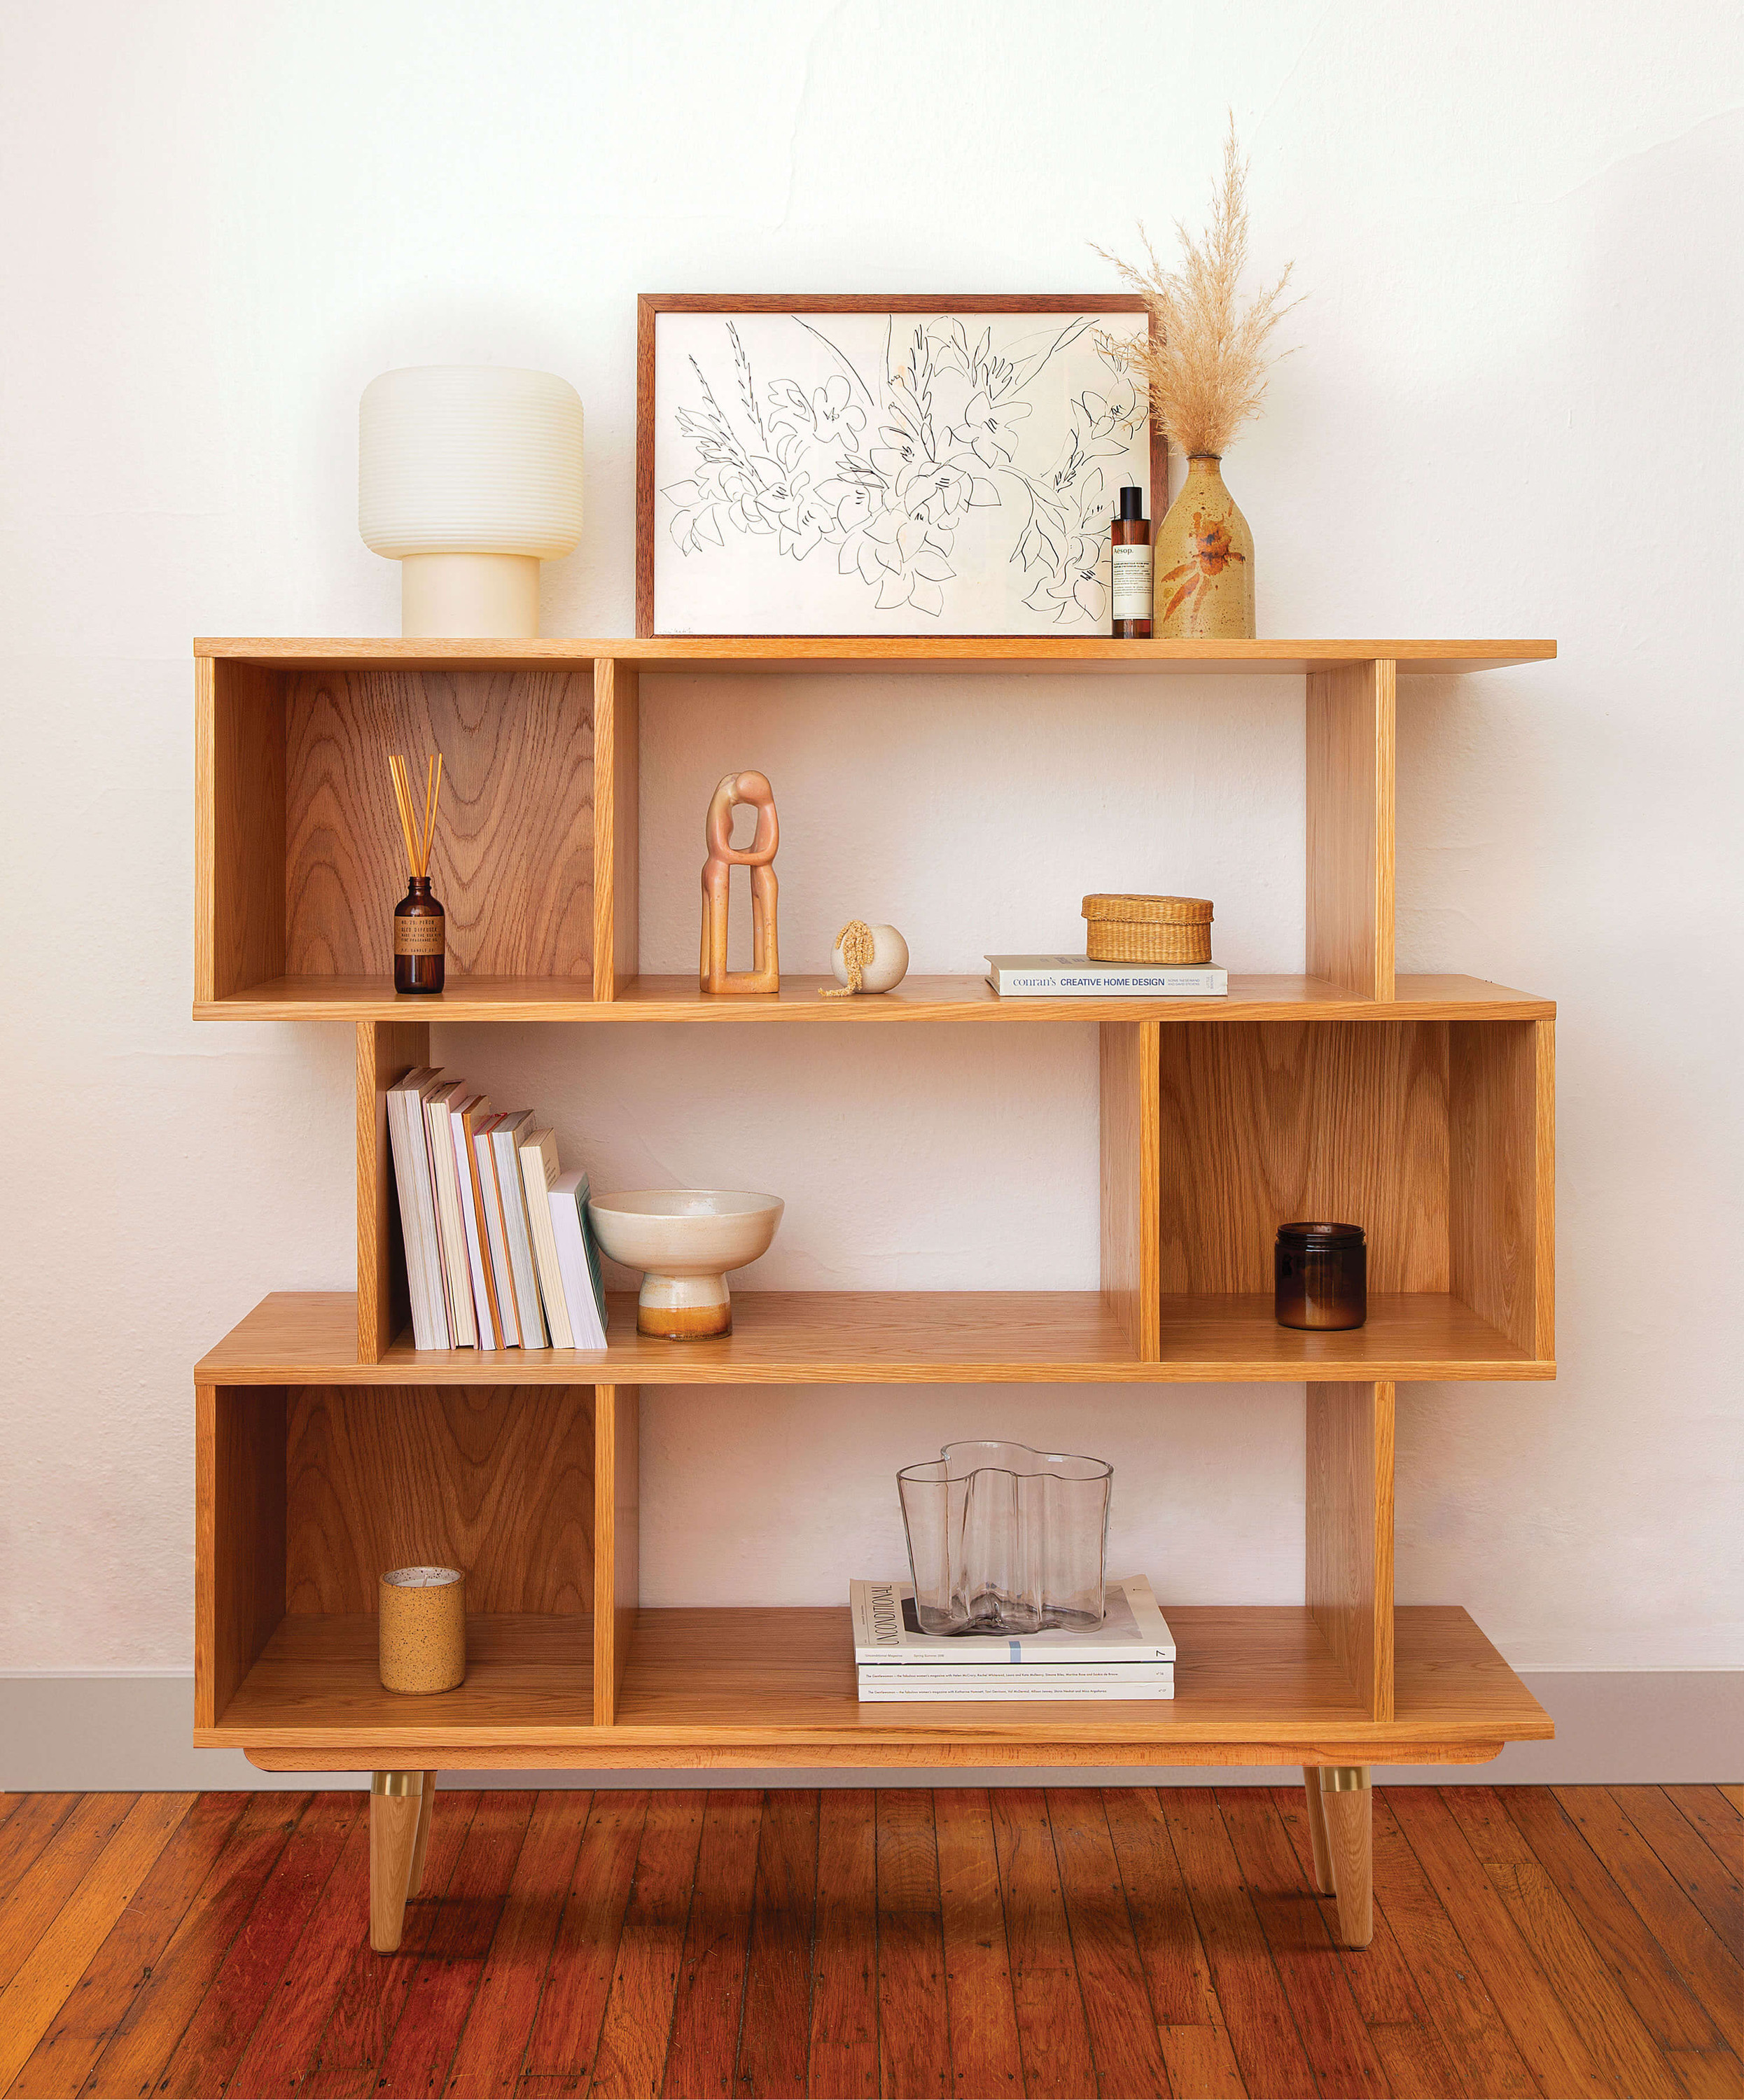 How to Style a Mod Bookshelf